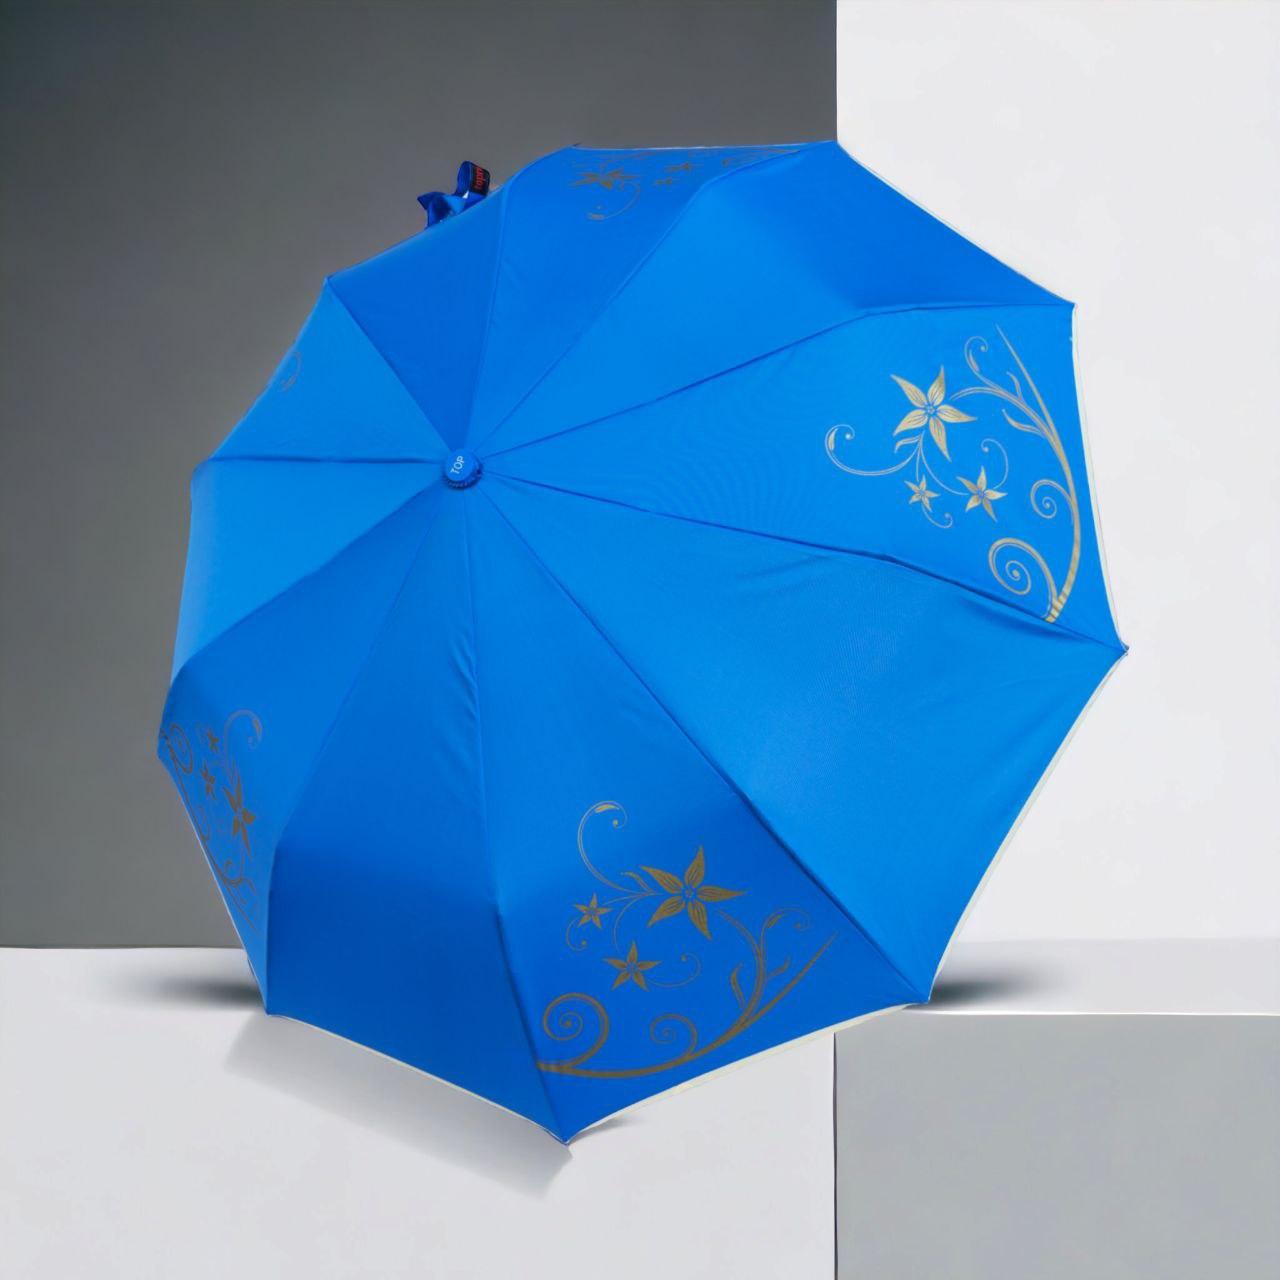 Жіноча парасолька від Toprain, напівавтомат з антивітром, із золотистим квітковим орнаментом, блакитний